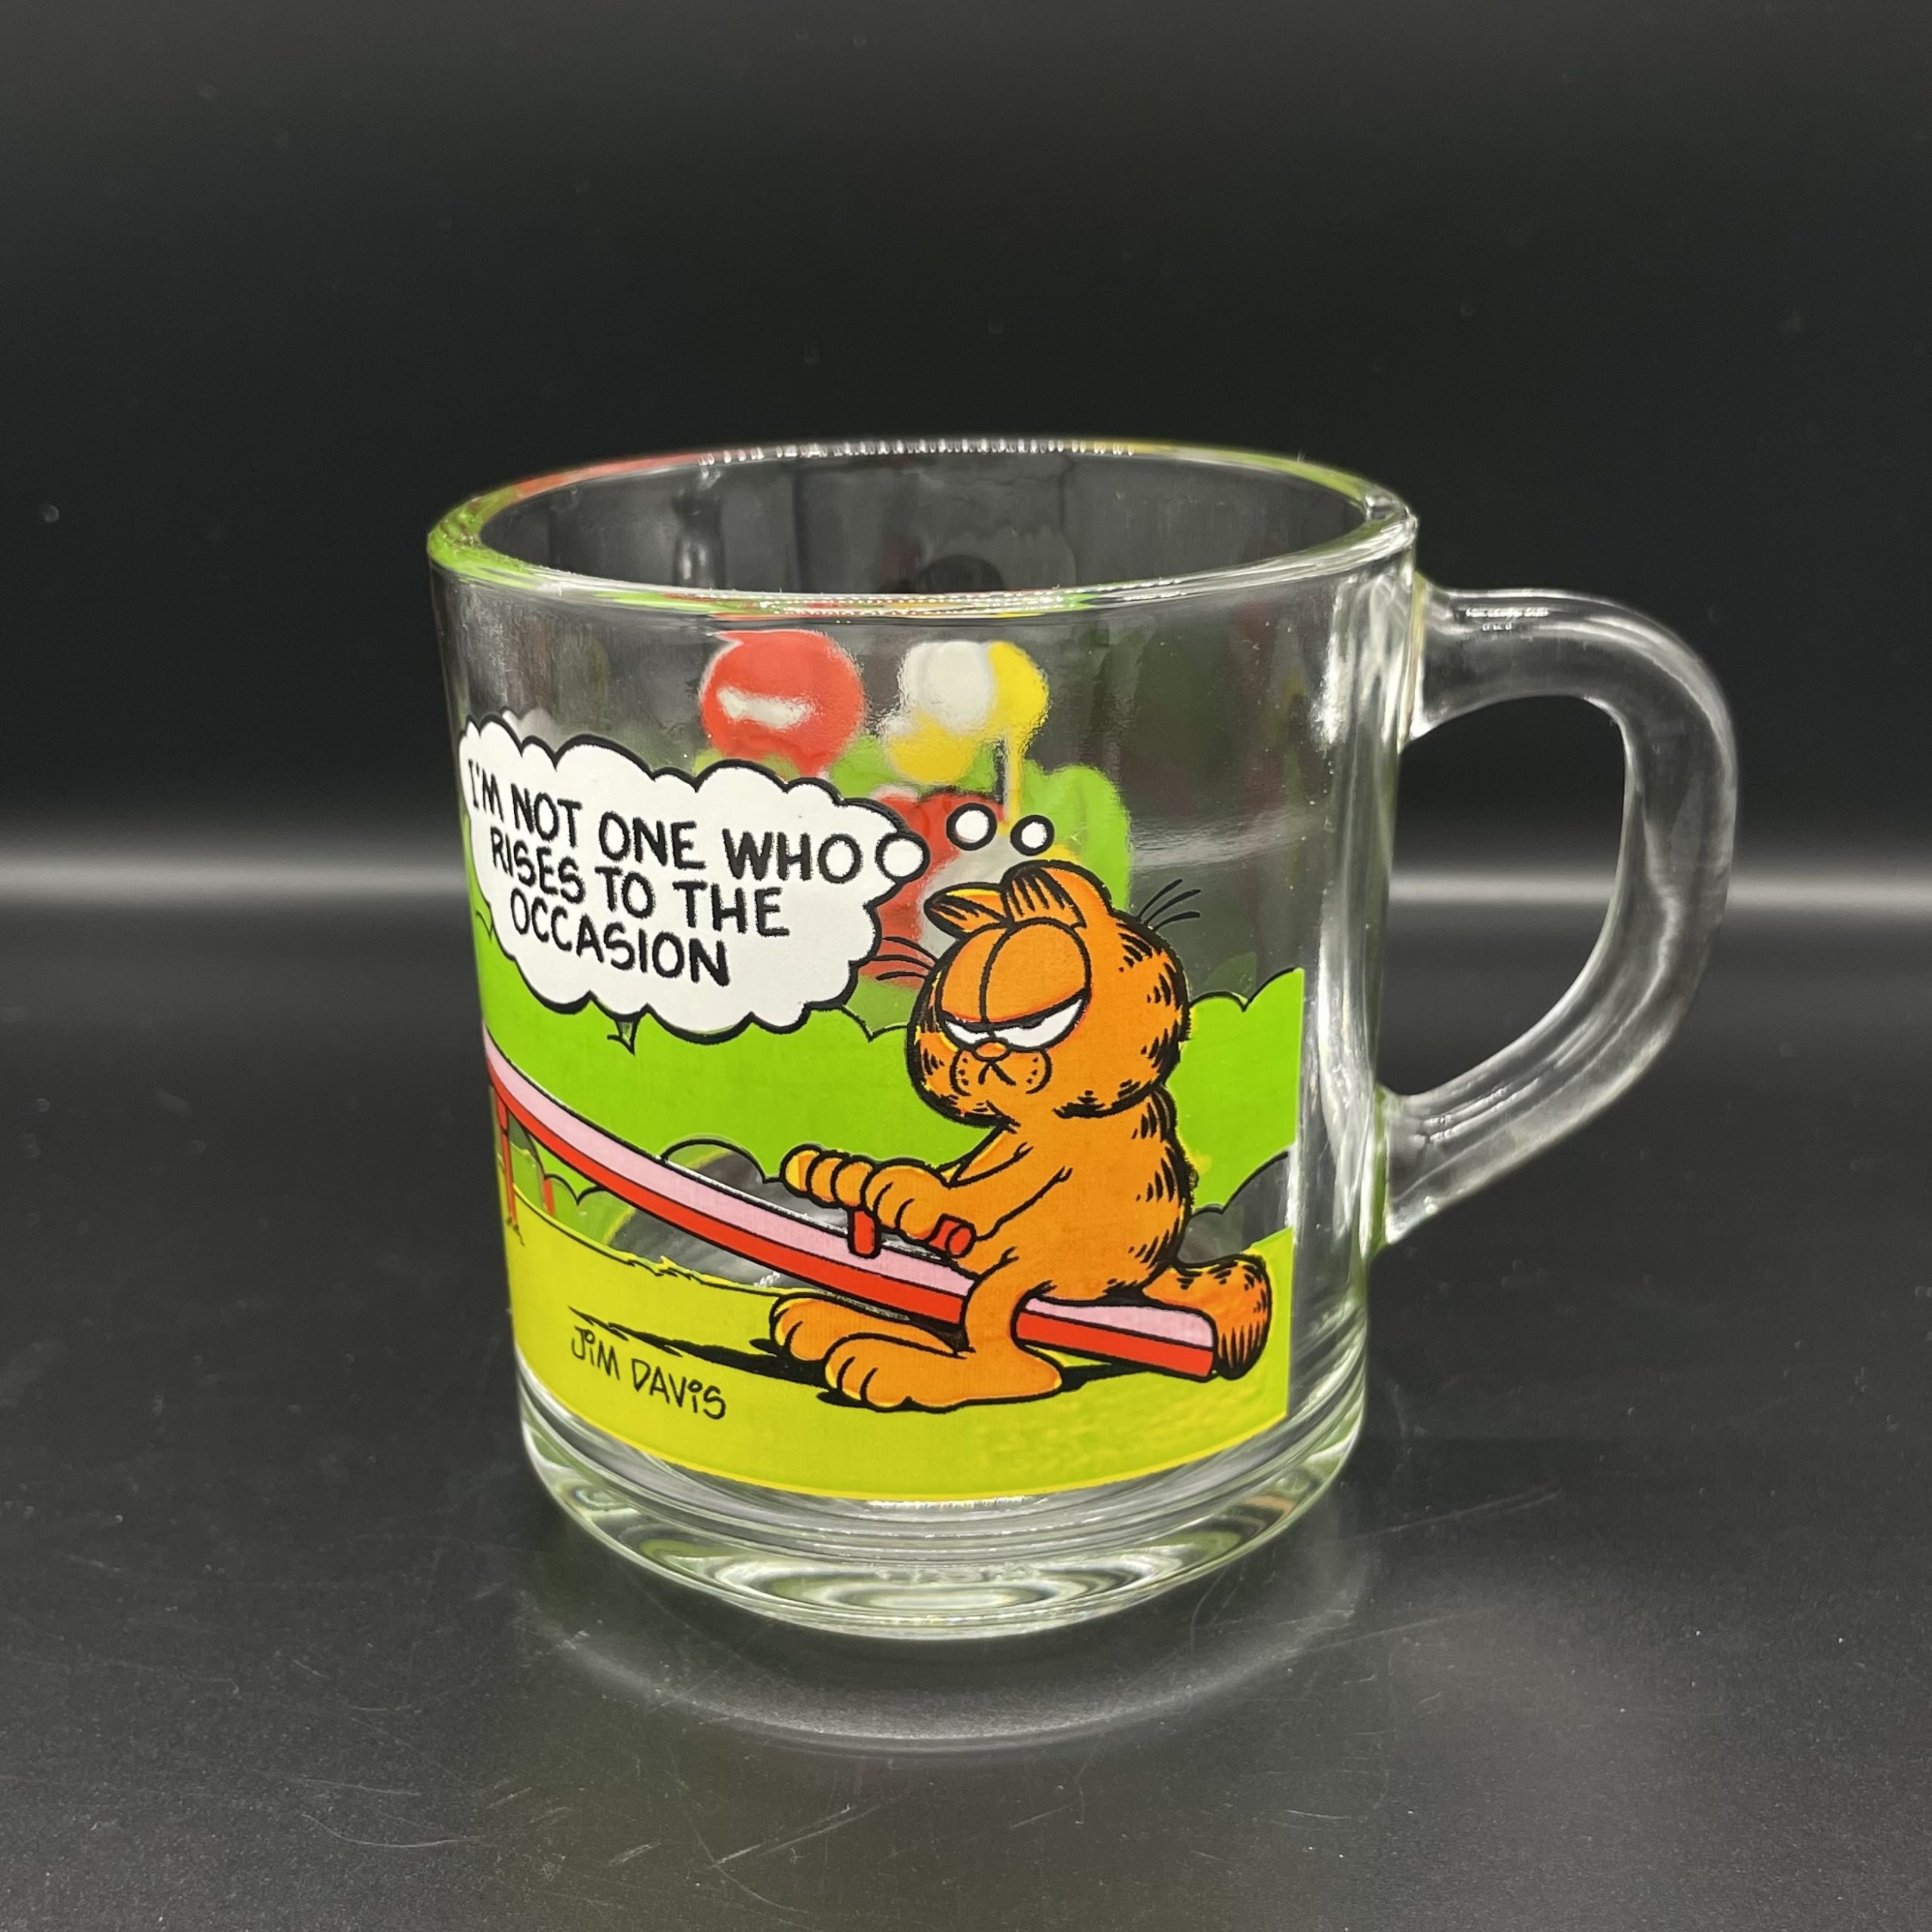 1978年 70’s ガーフィールド マクドナルド ノベルティーマグ シーソー GARFIELD McDonald’s Glass Mug